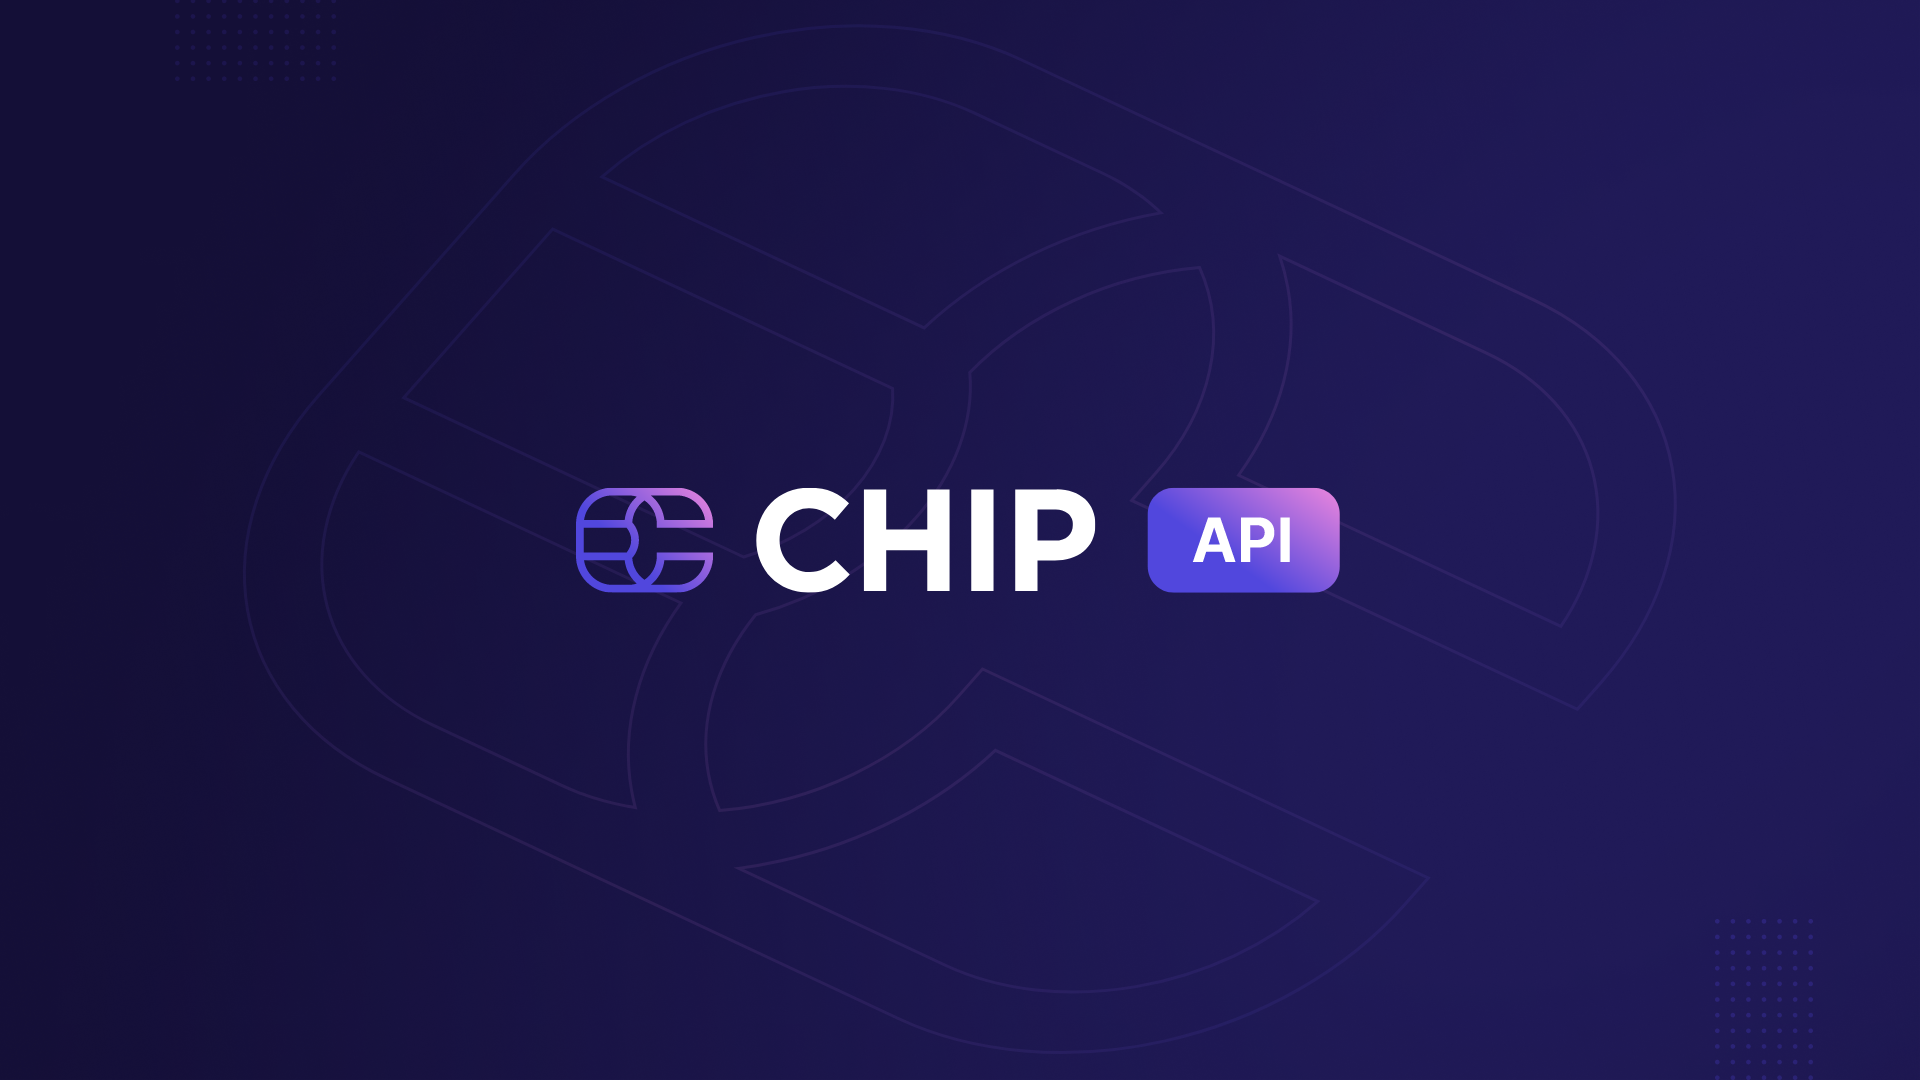 CHIP API